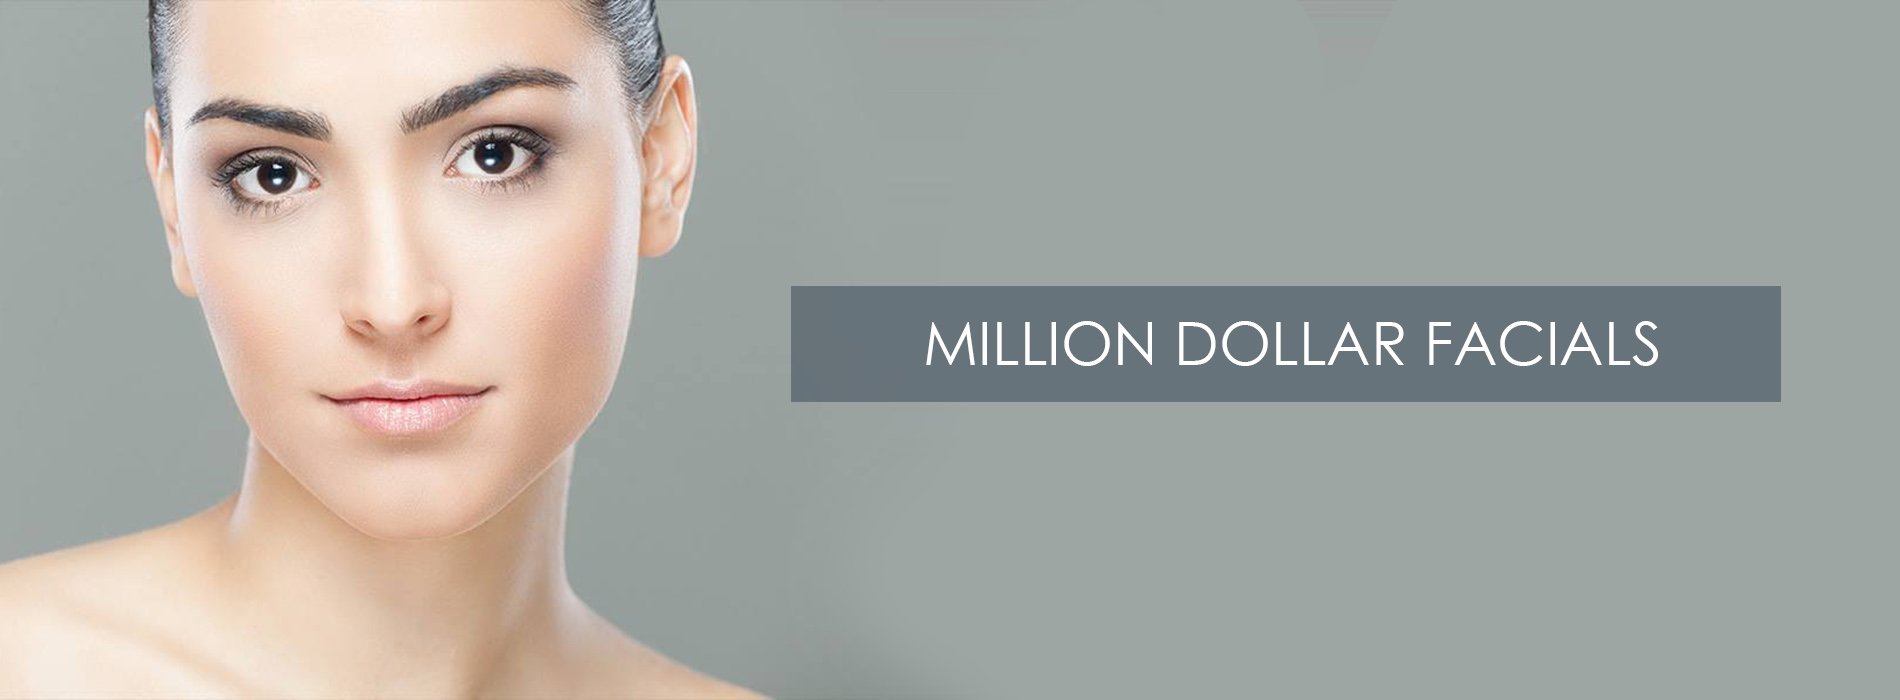 Million Dollar Facials at Dunstable Aesthetics Clinic